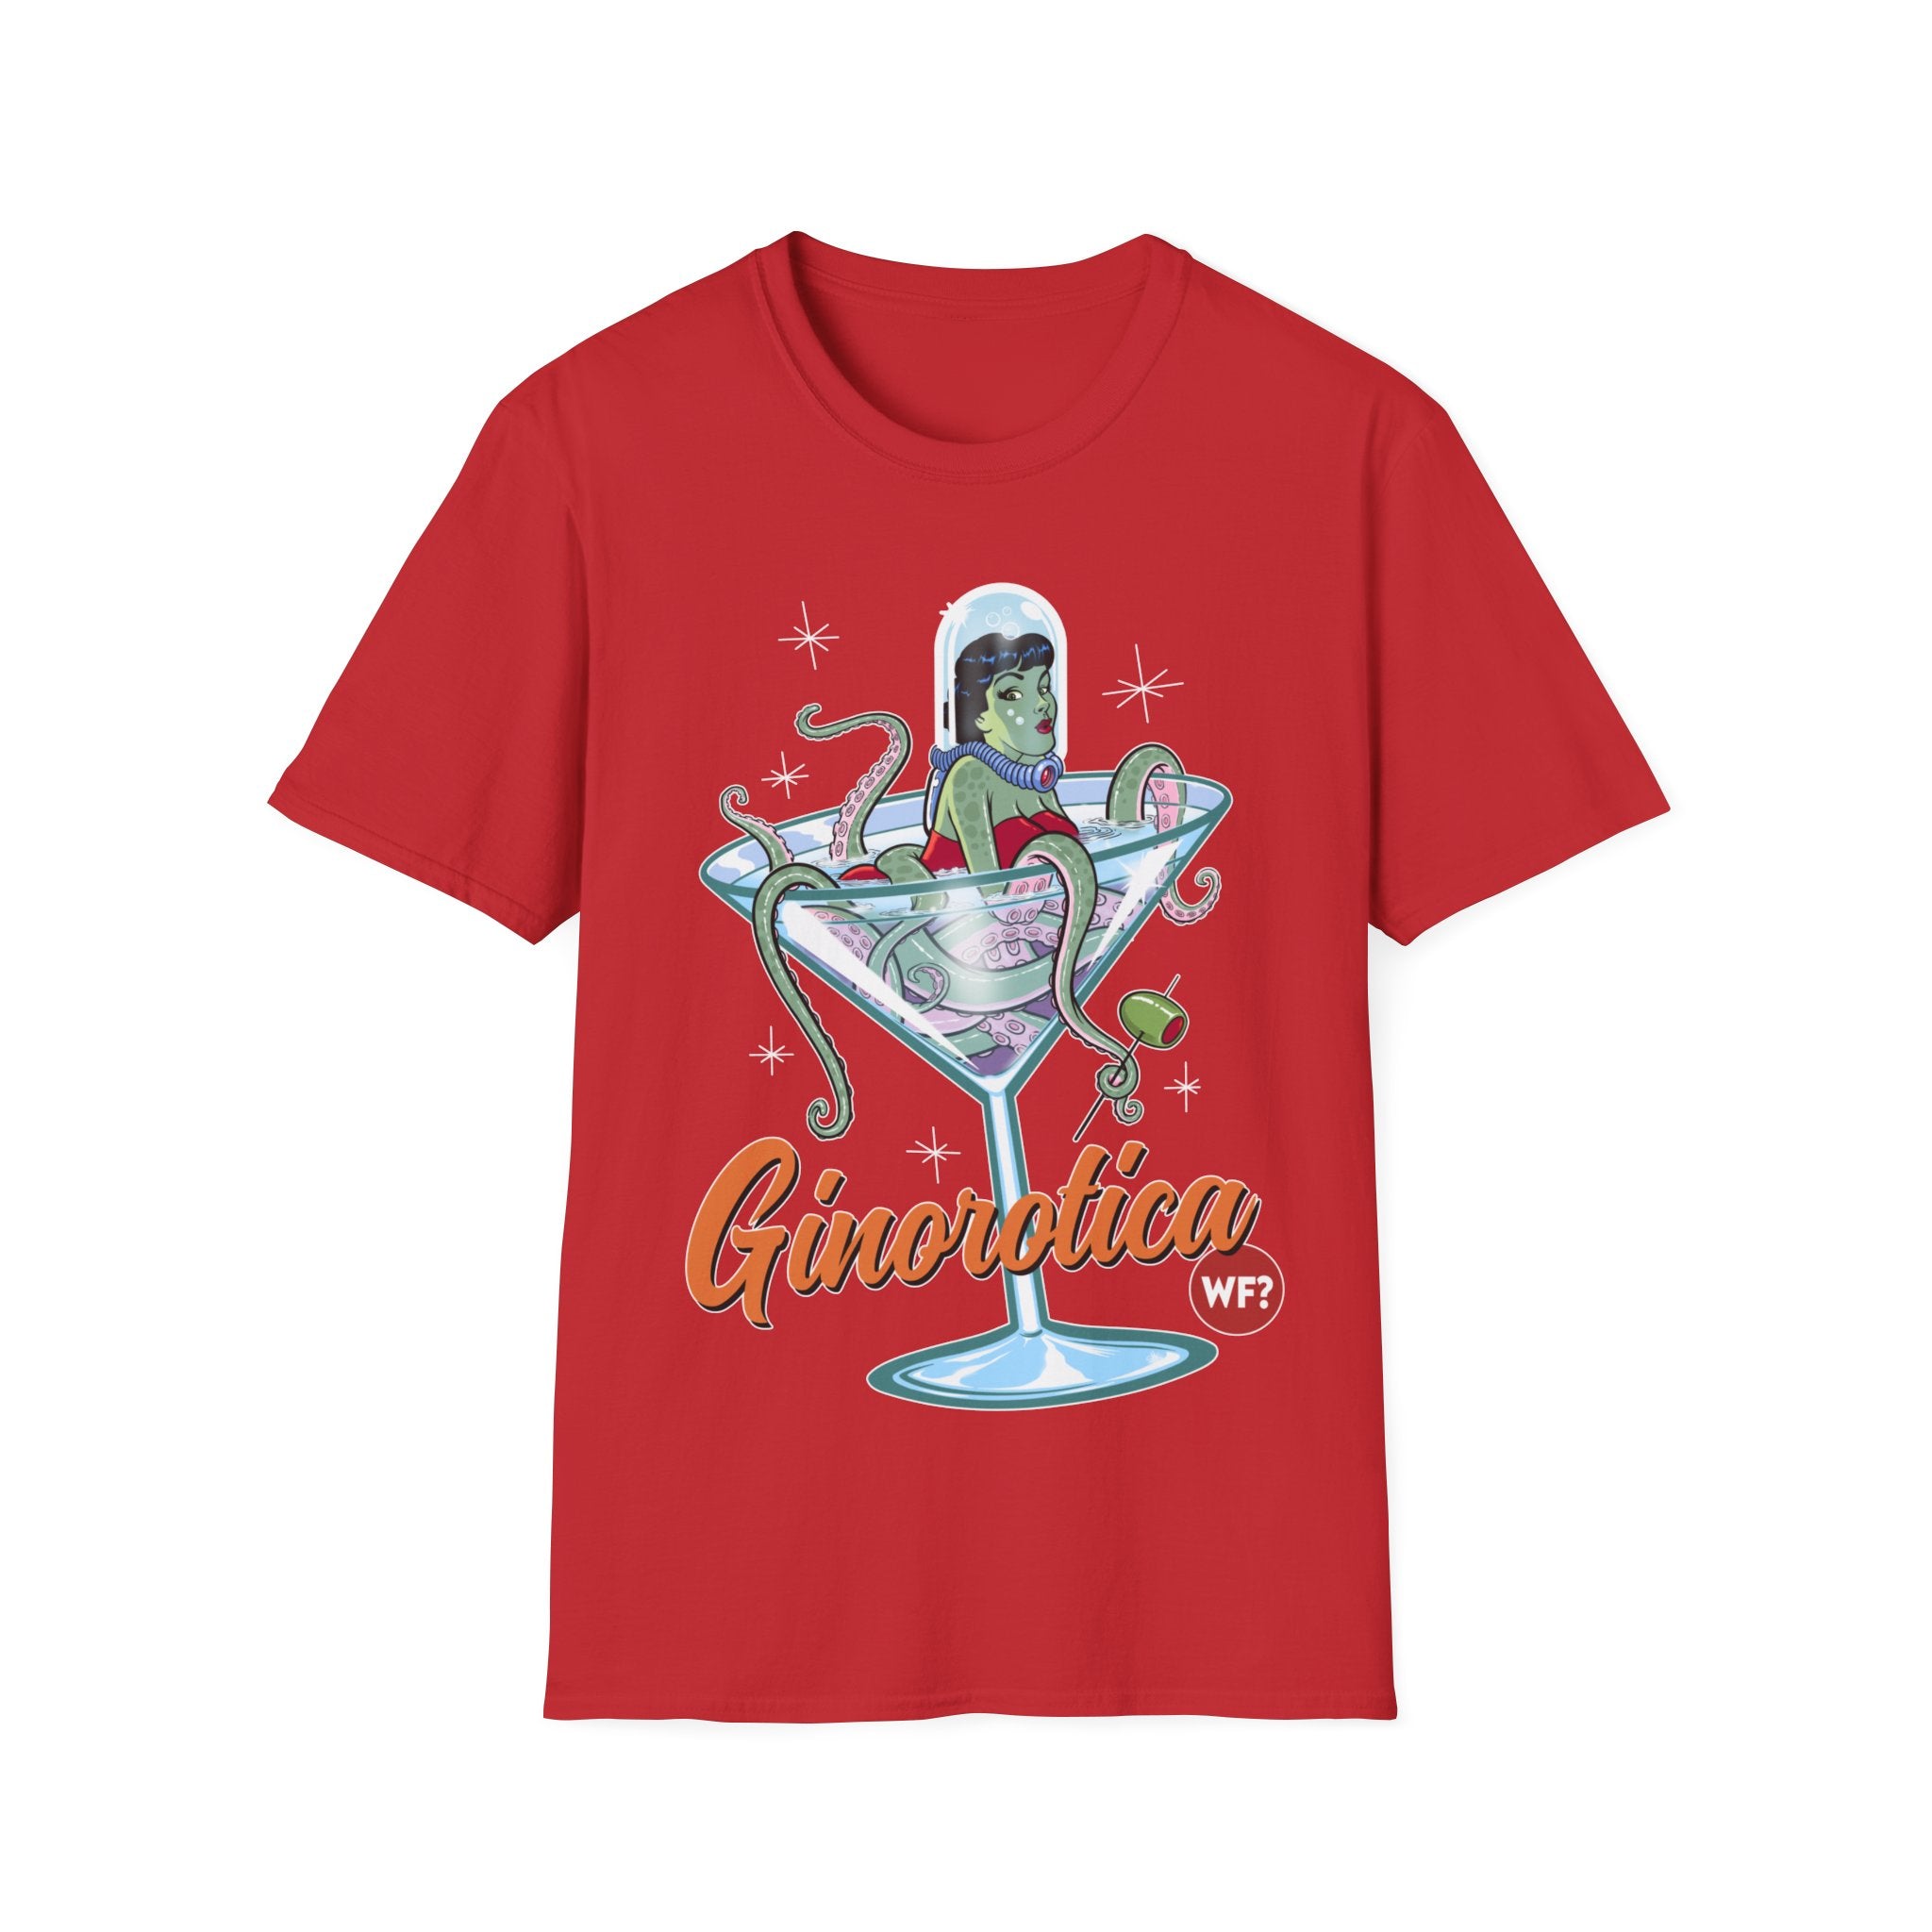 Buy red Ginorotica Unisex T-Shirt